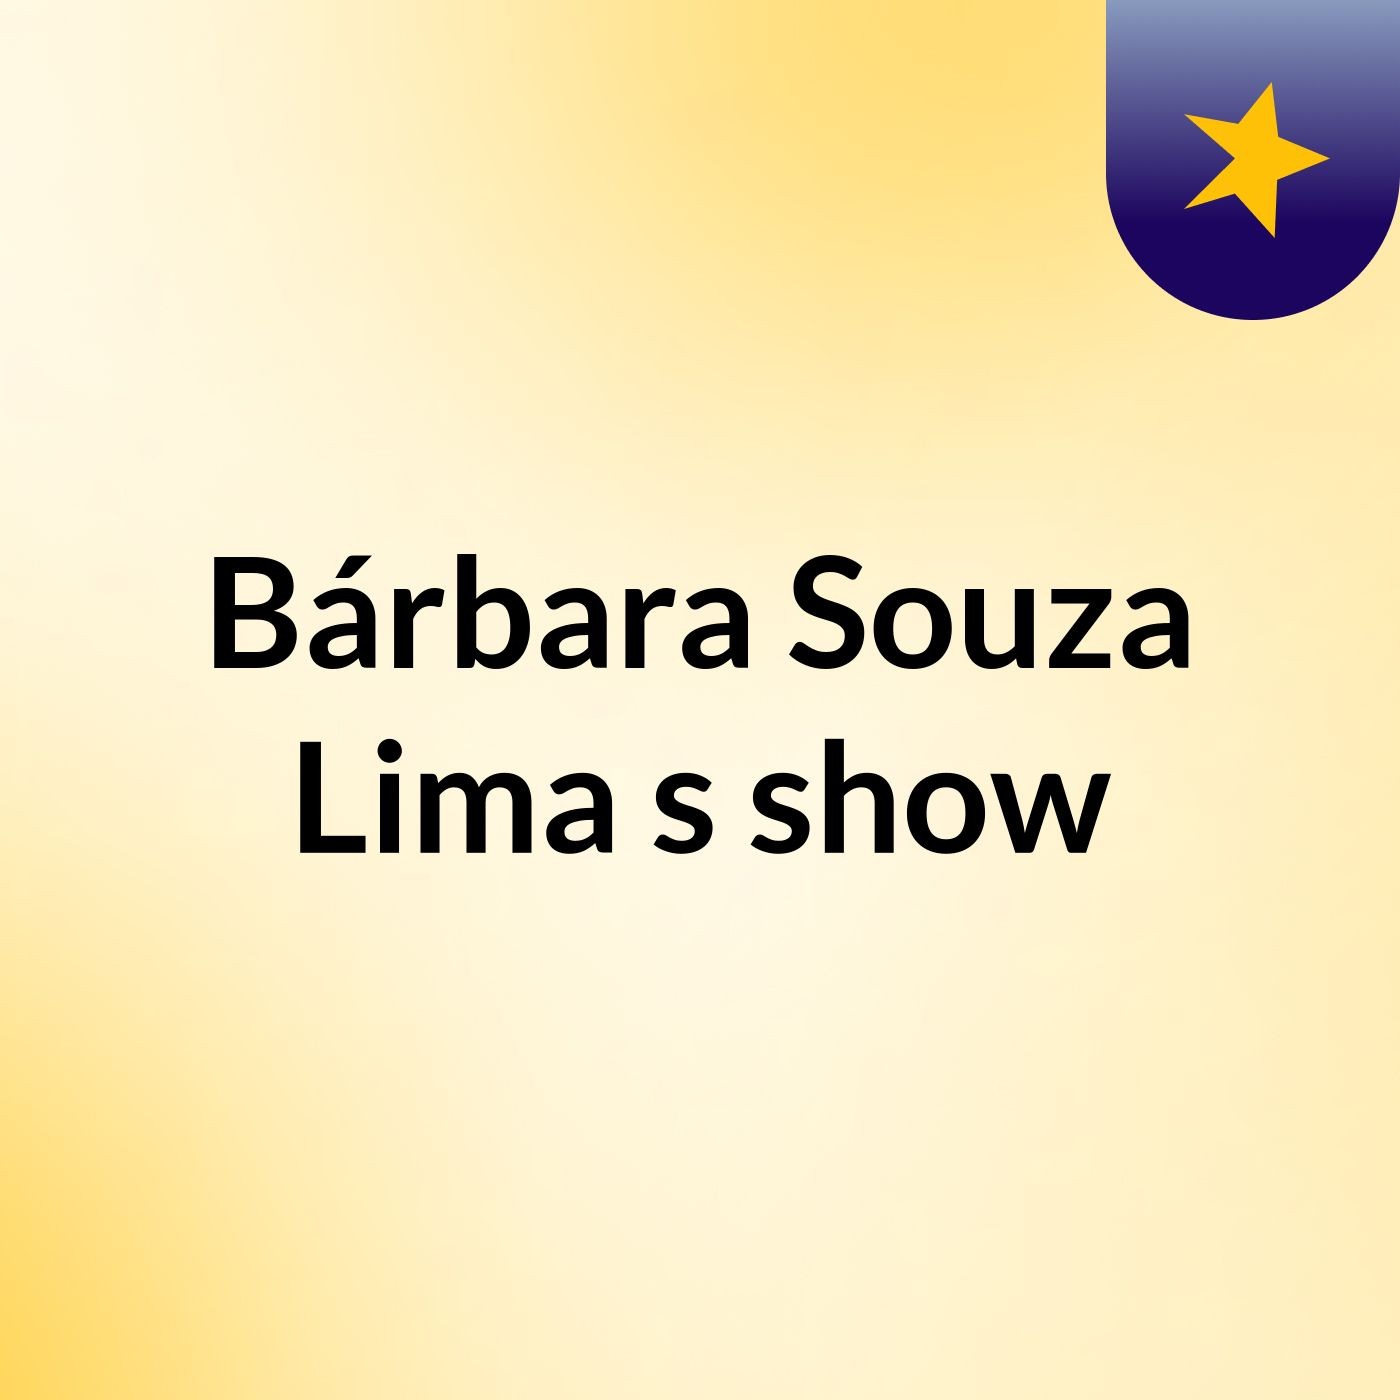 Bárbara Souza Lima's show